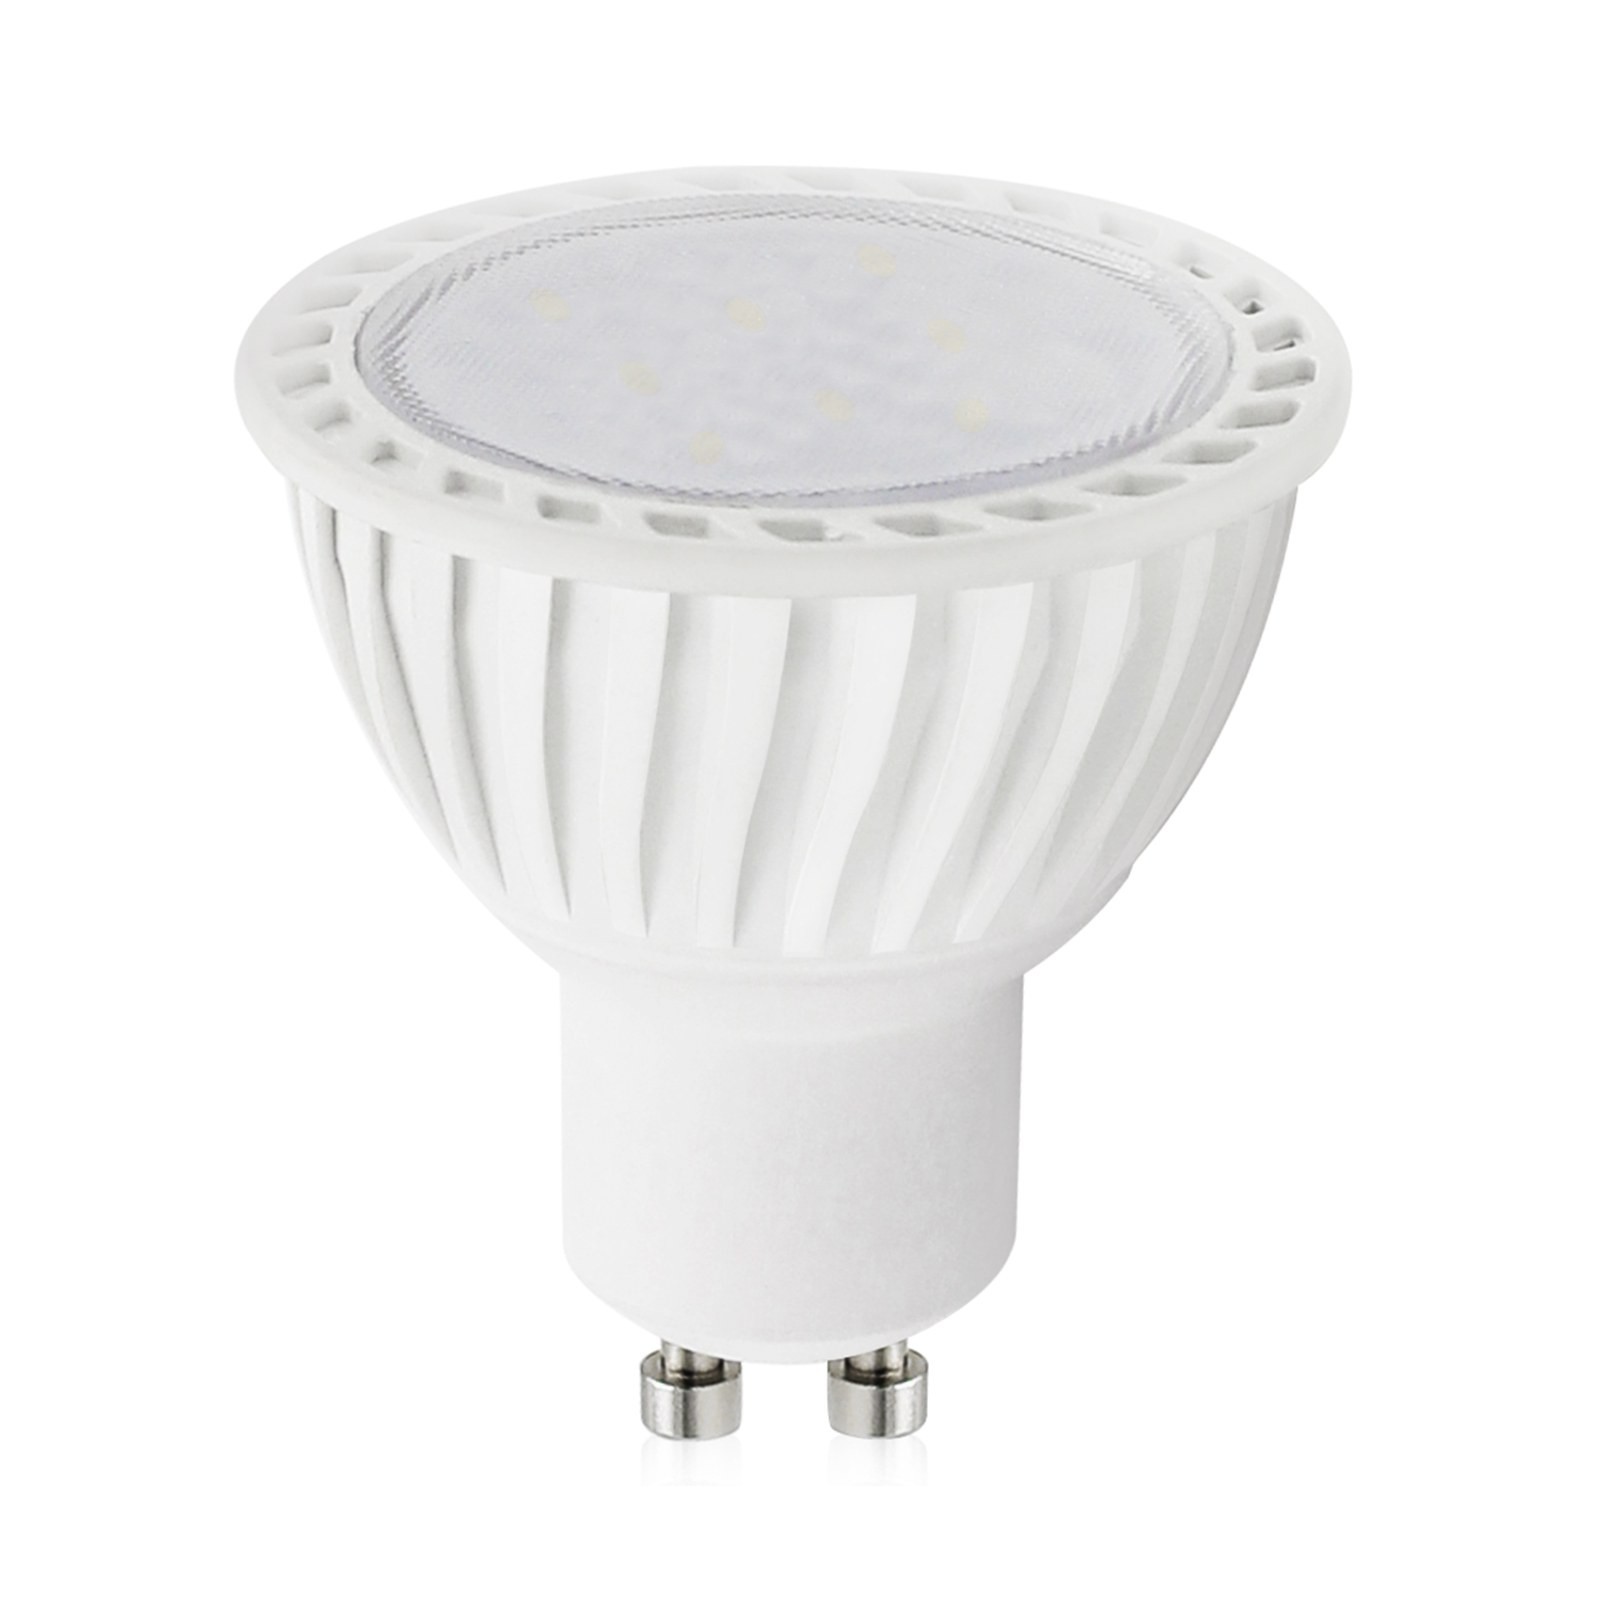 Lampada led lampadina gu10 luce bianca naturale par16 life for Lampada led 50 watt